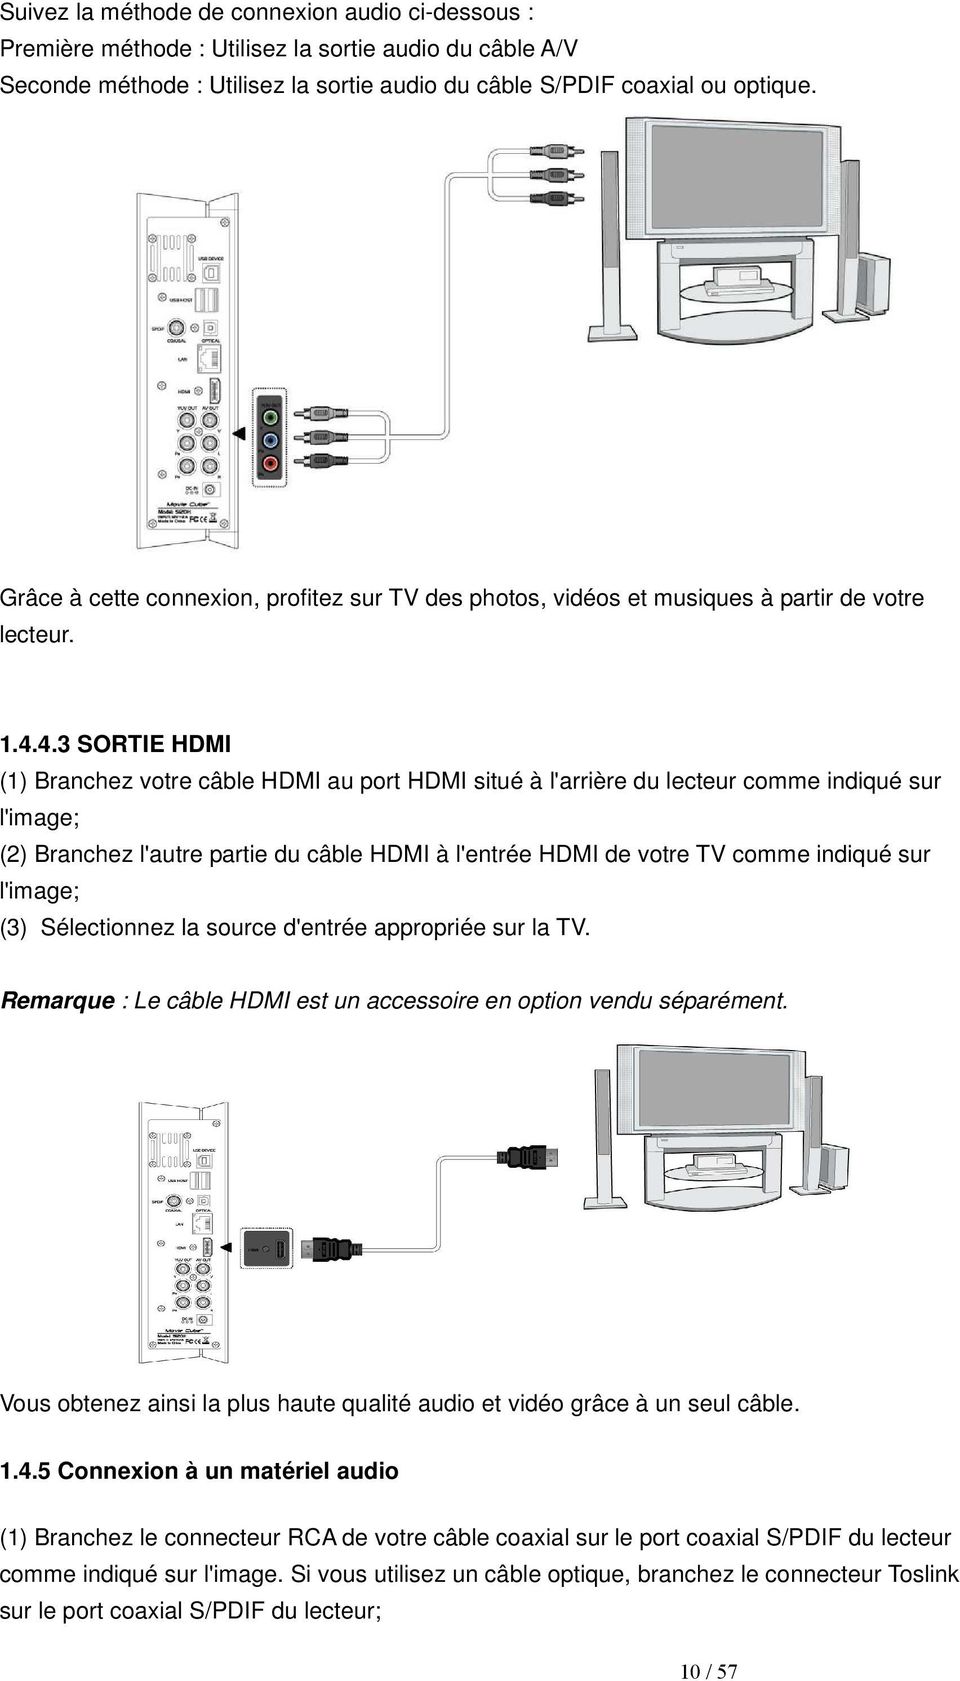 4.3 SORTIE HDMI (1) Branchez votre câble HDMI au port HDMI situé à l'arrière du lecteur comme indiqué sur l'image; (2) Branchez l'autre partie du câble HDMI à l'entrée HDMI de votre TV comme indiqué